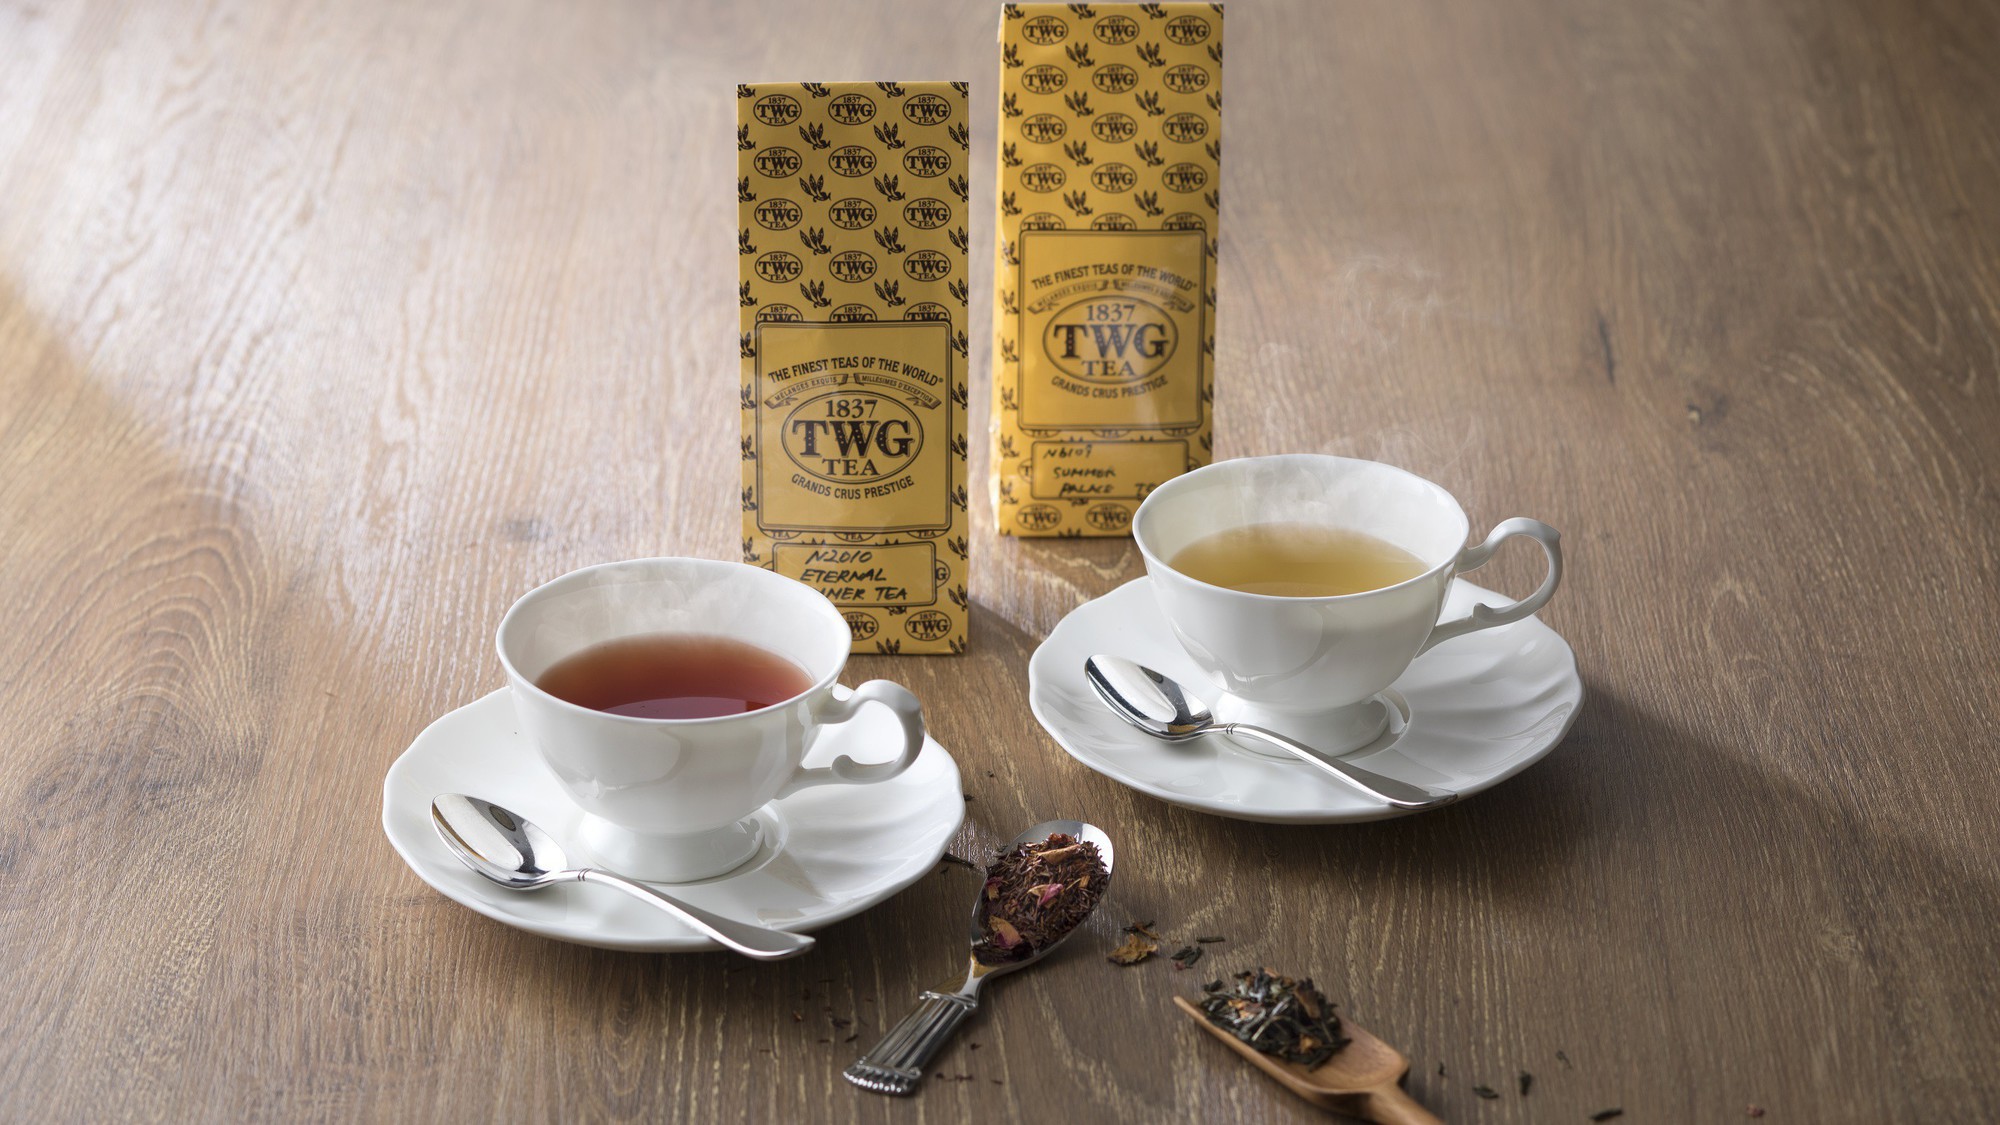 バンブーでは世界屈指のラグジュアリーティーブランド「TWG Tea」の紅茶を提供しています